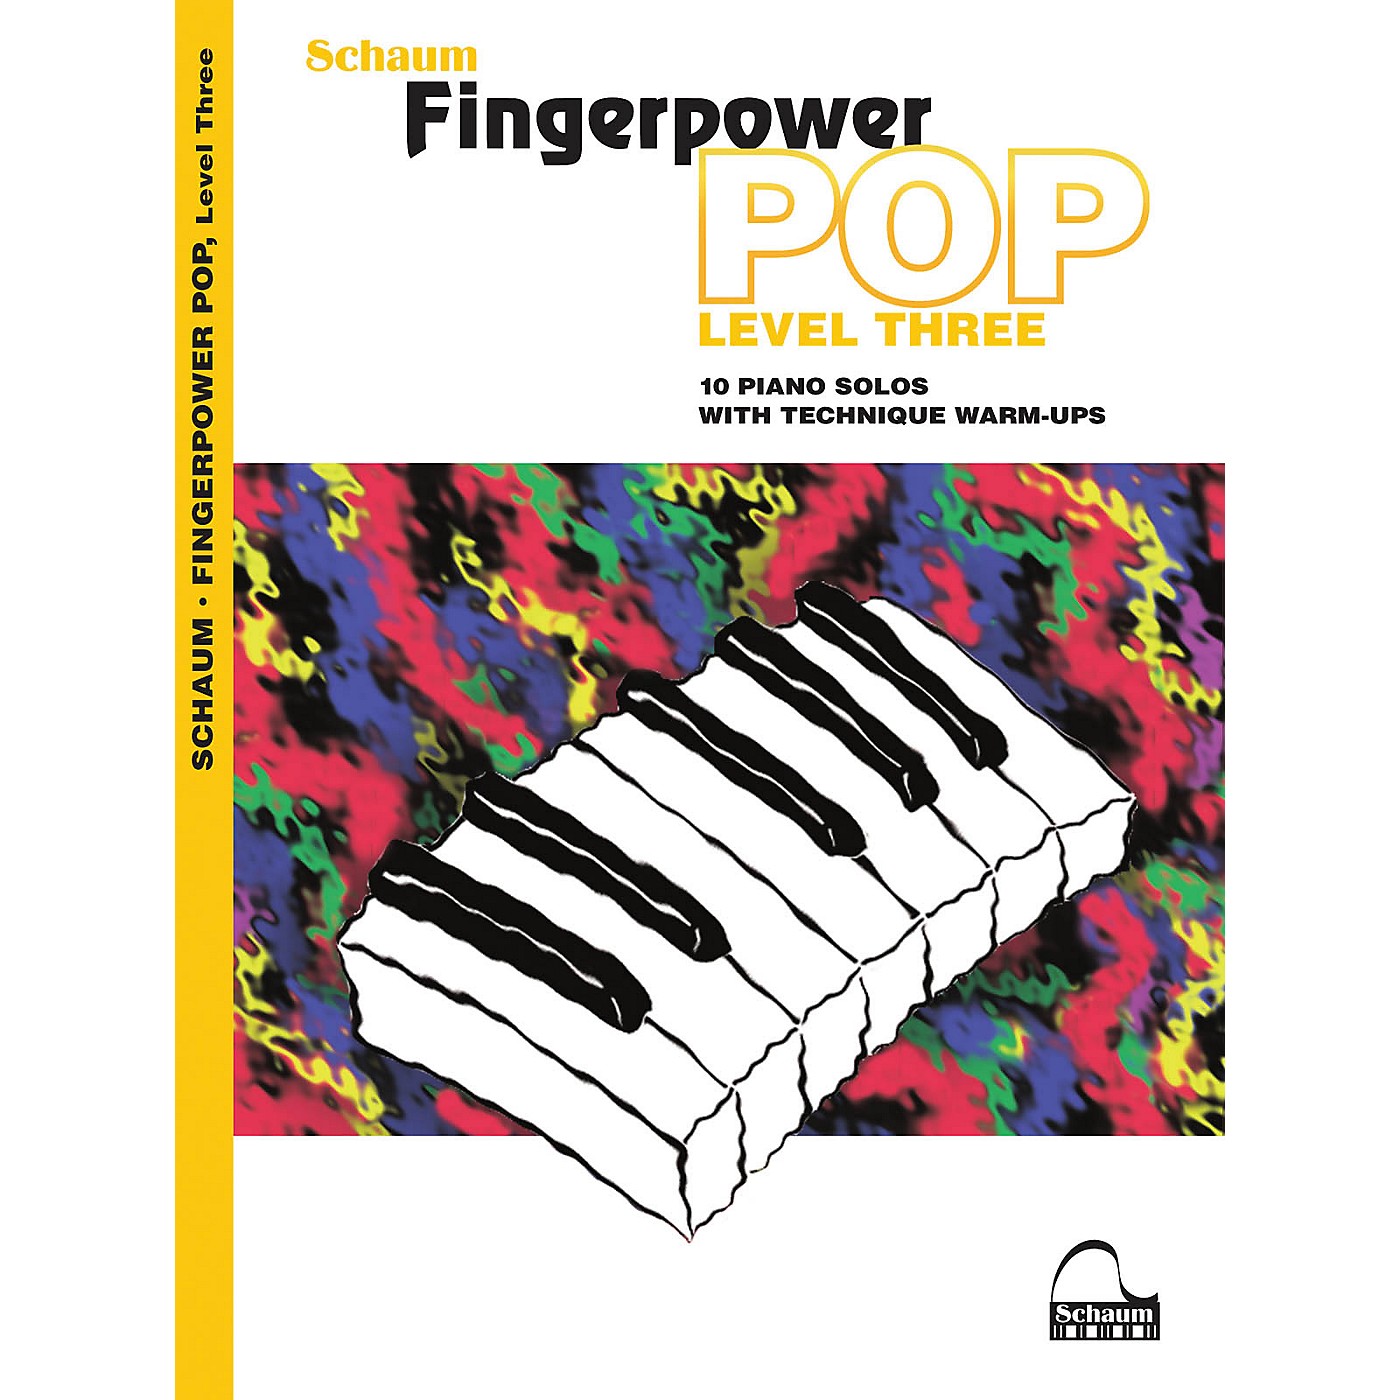 Schaum Fingerpower Pop - Level 3 (10 Piano Solos with Technique Warm-Ups) thumbnail